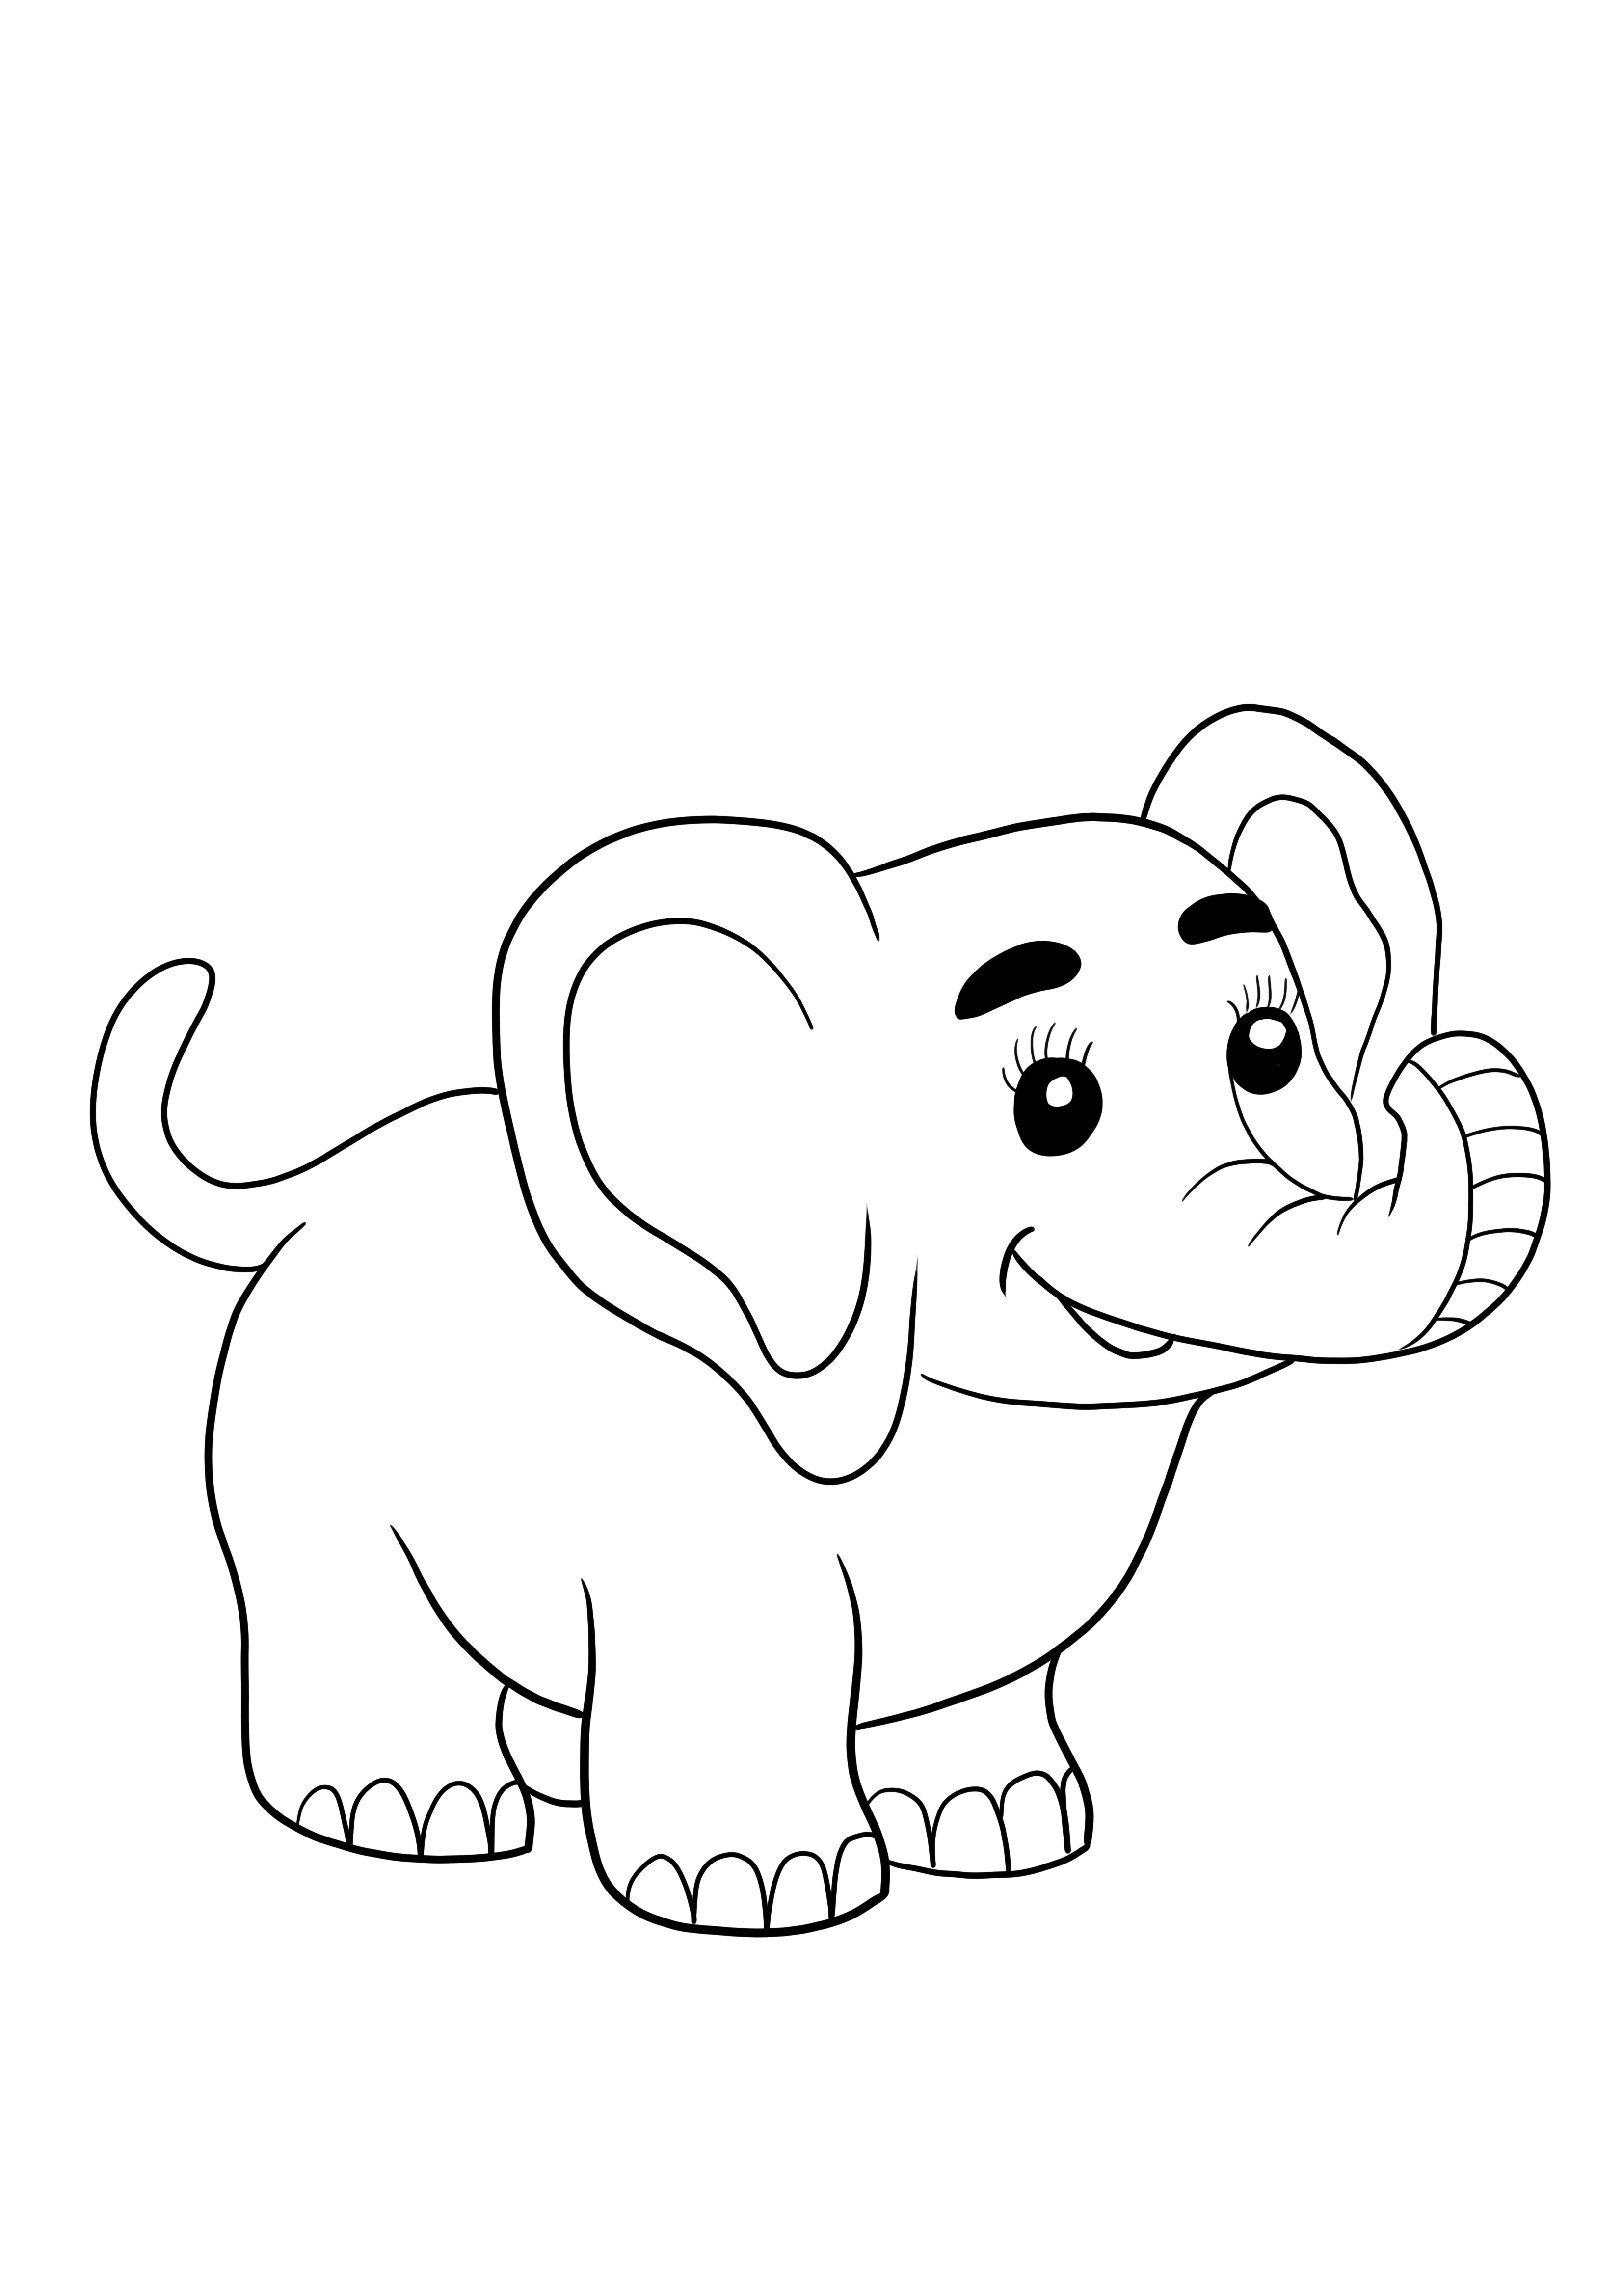 Słodki słoń za darmo do drukowania i kolorowania dla dzieci w każdym wieku